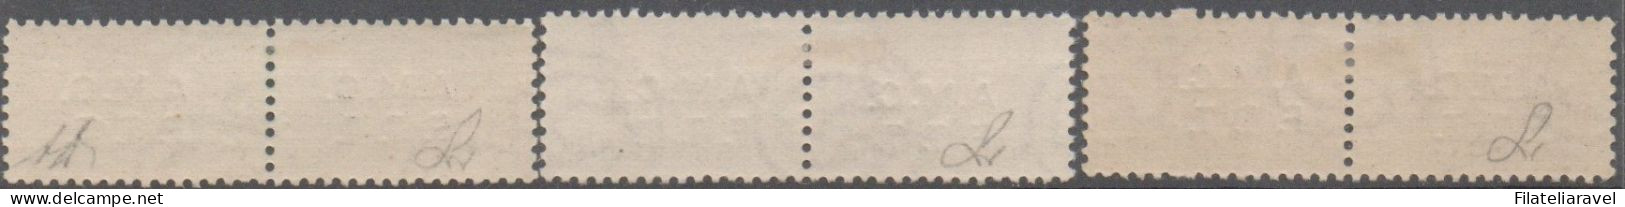 Trieste - Zona A - 1947/48 - Pacchi Postali, Sovrastampati Su 2 Righe, Cat.1/12, Impercettibile Traccia Di Linguella. - Paketmarken/Konzessionen